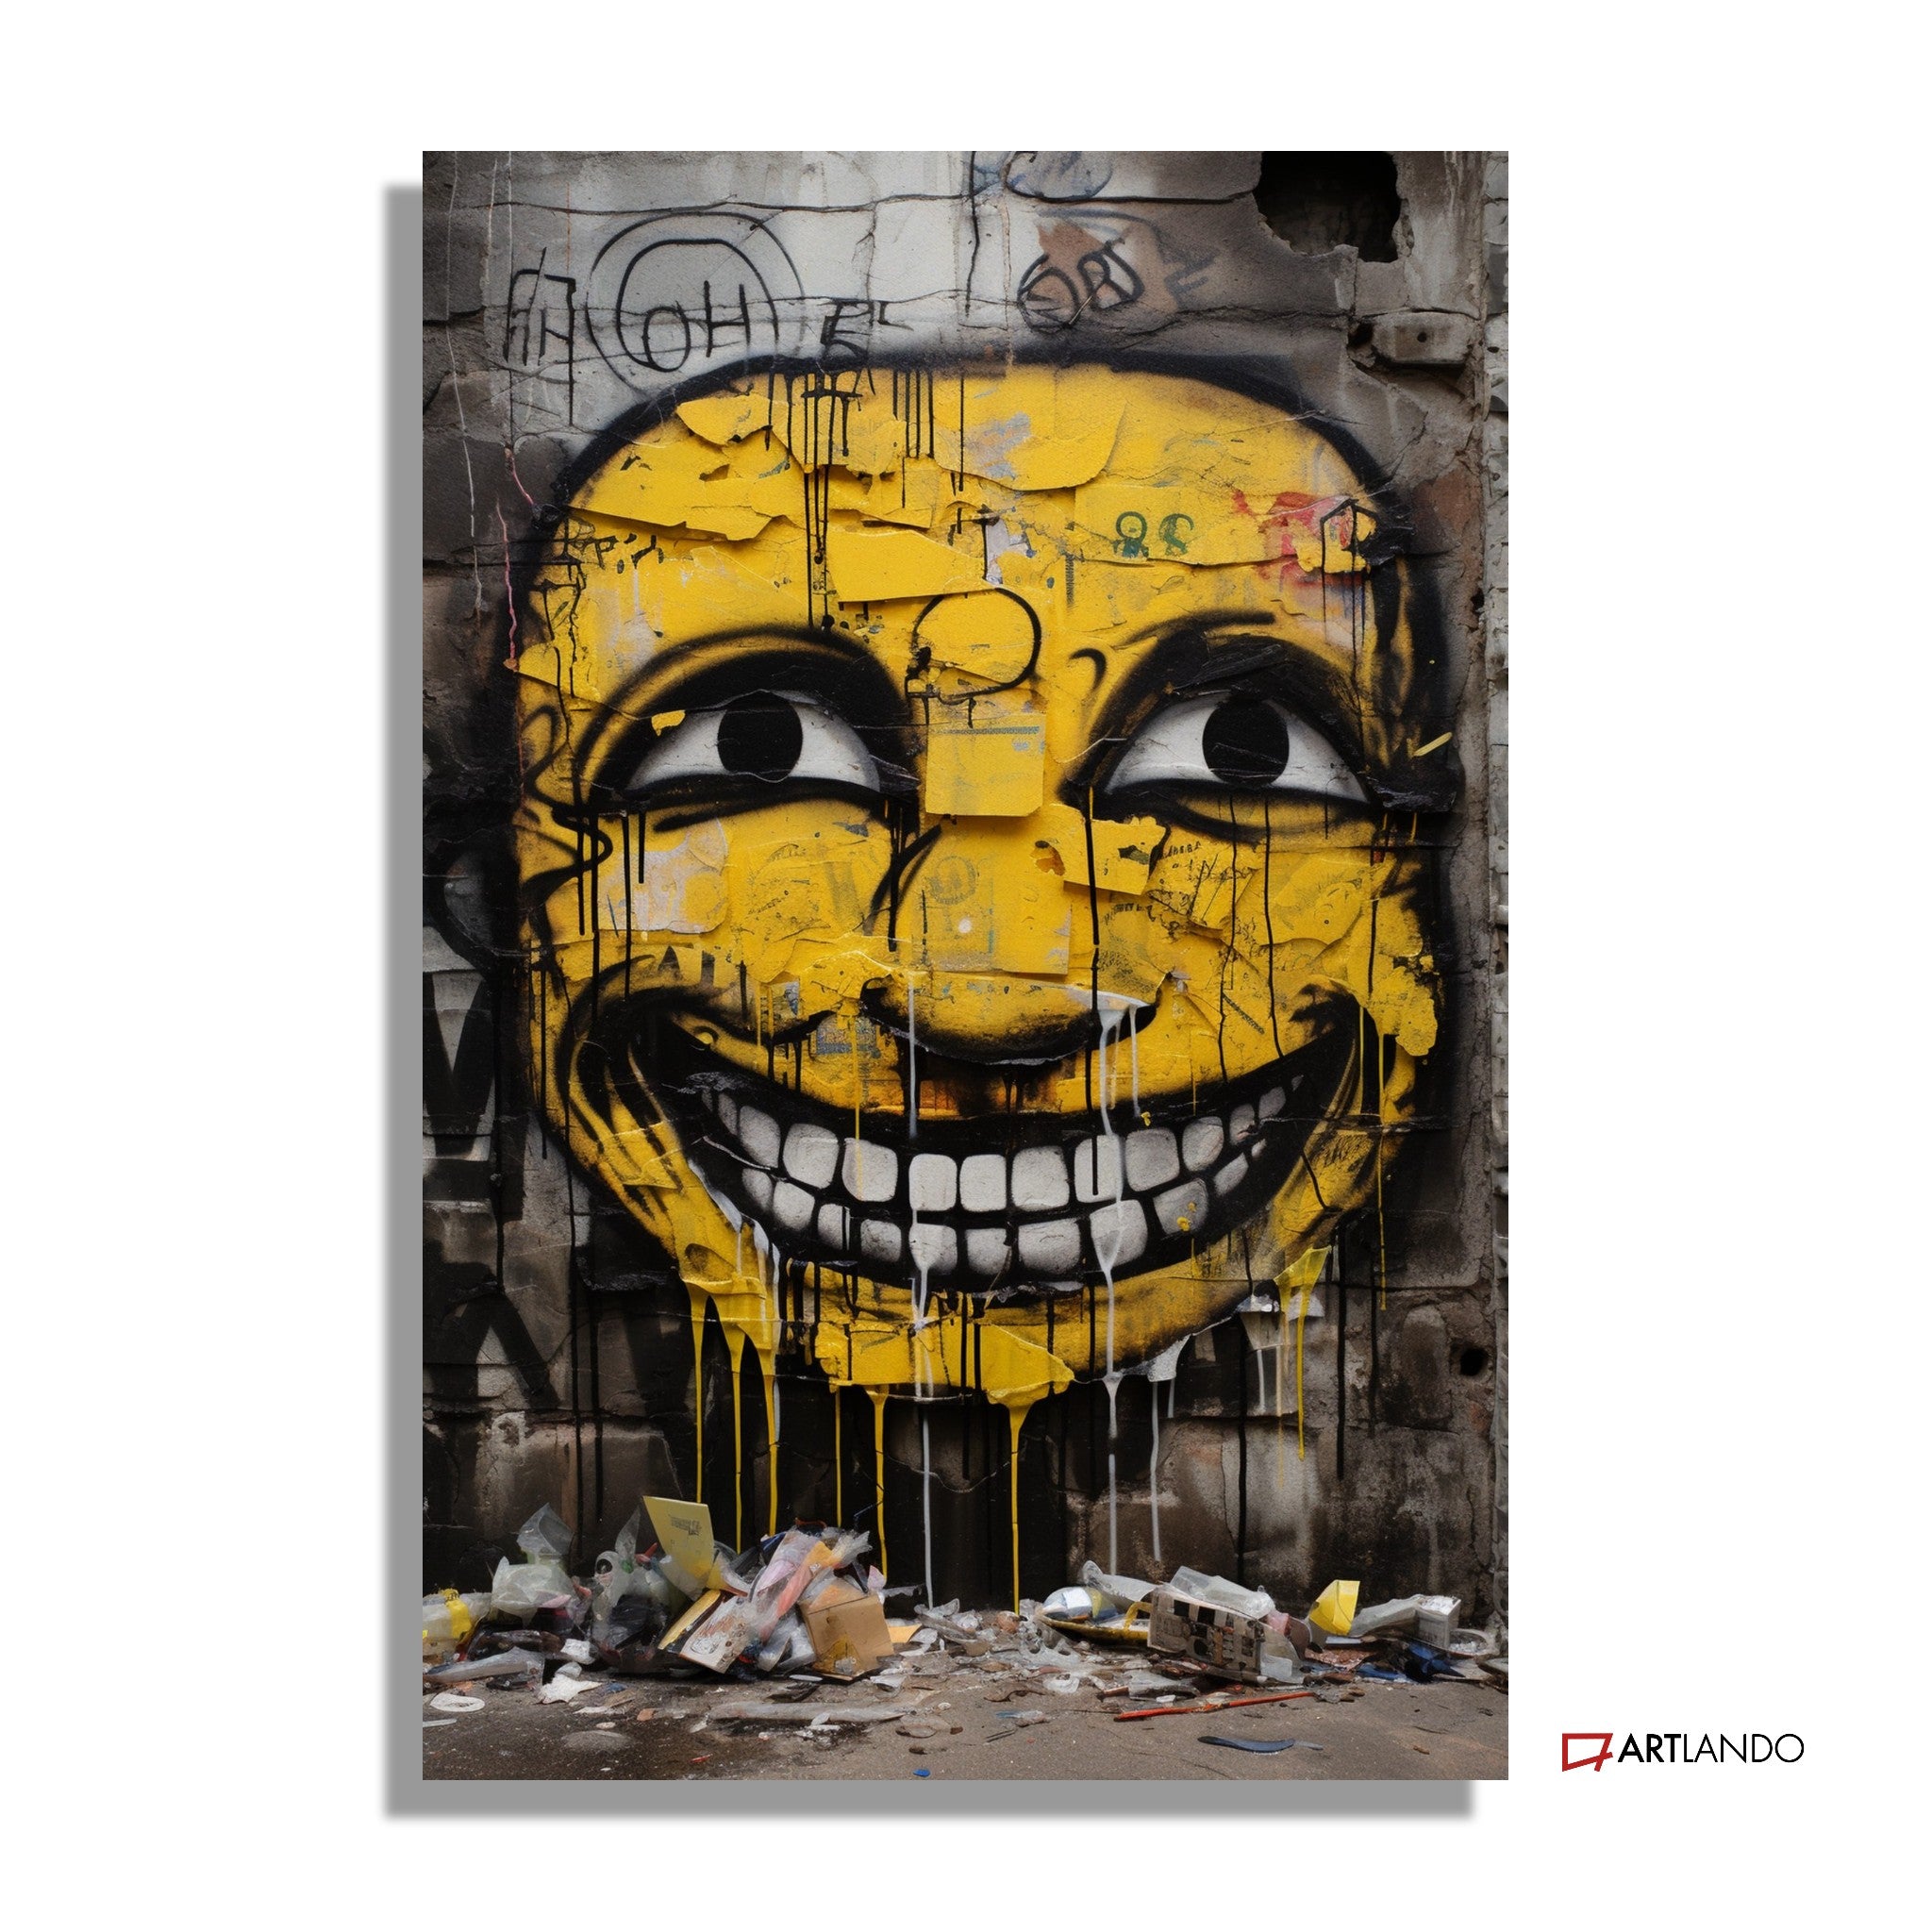 Breit grinsendes Smiley Graffiti auf besprühter Wand - Street Art